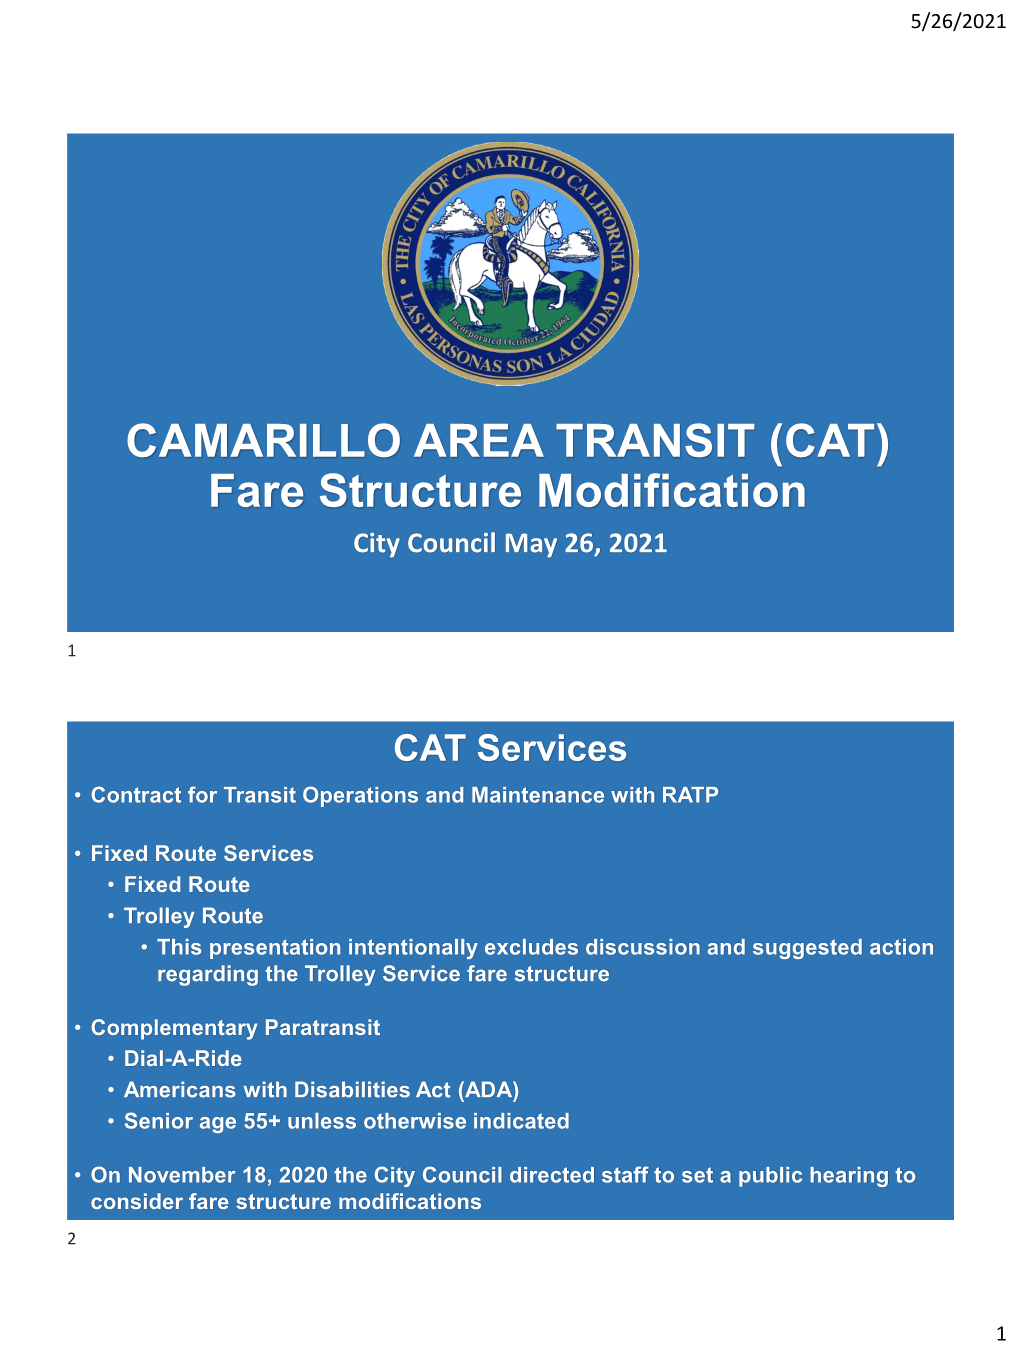 CAMARILLO AREA TRANSIT (CAT) Fare Structure Modification City Council May 26, 2021